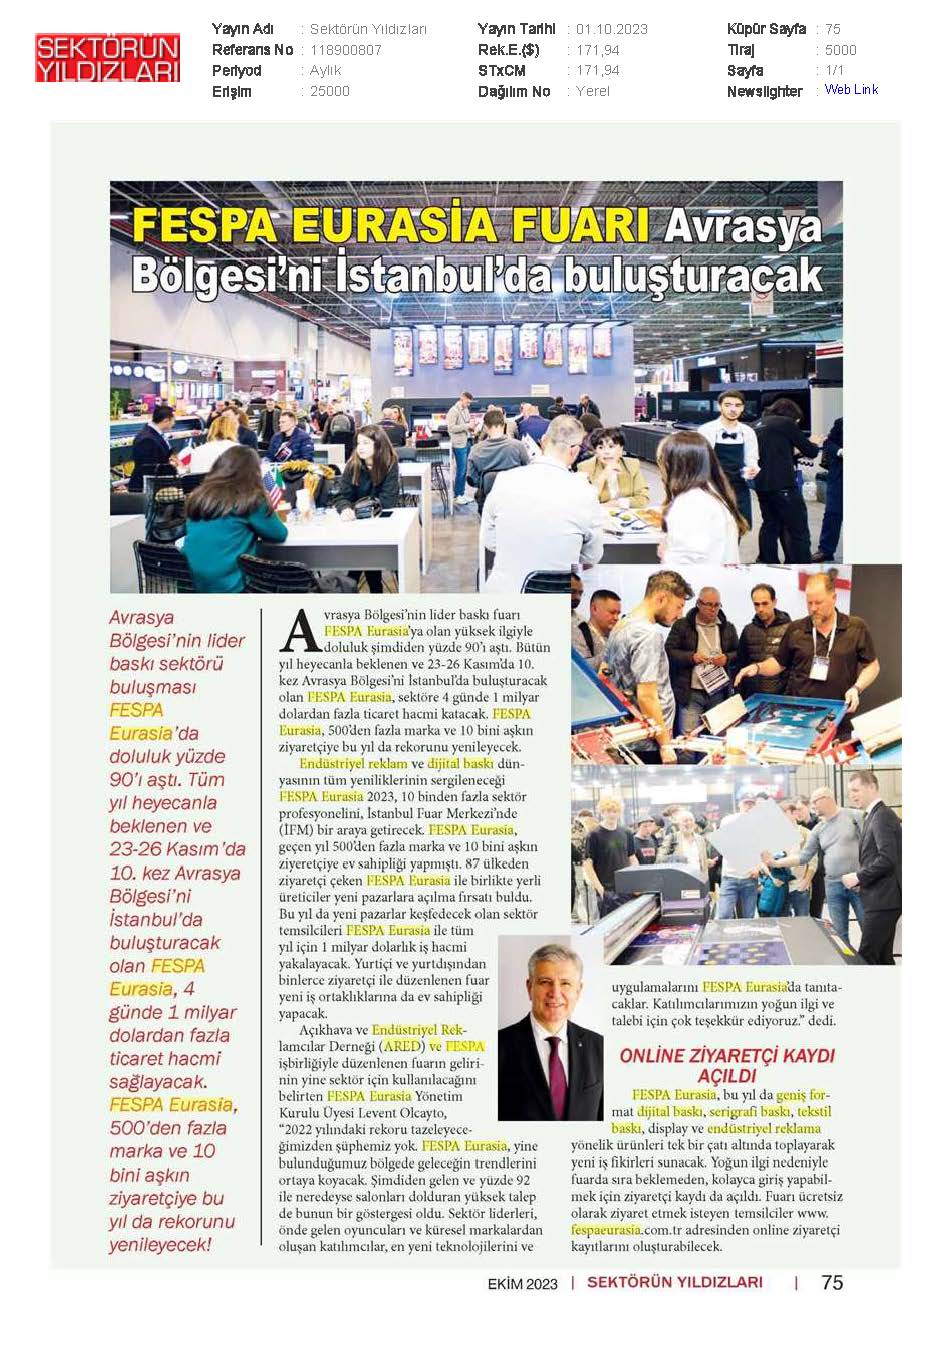 FESPA Eurasia Fuarı Avrasya Bölgesi'ni İstanbul'da Buluşturacak